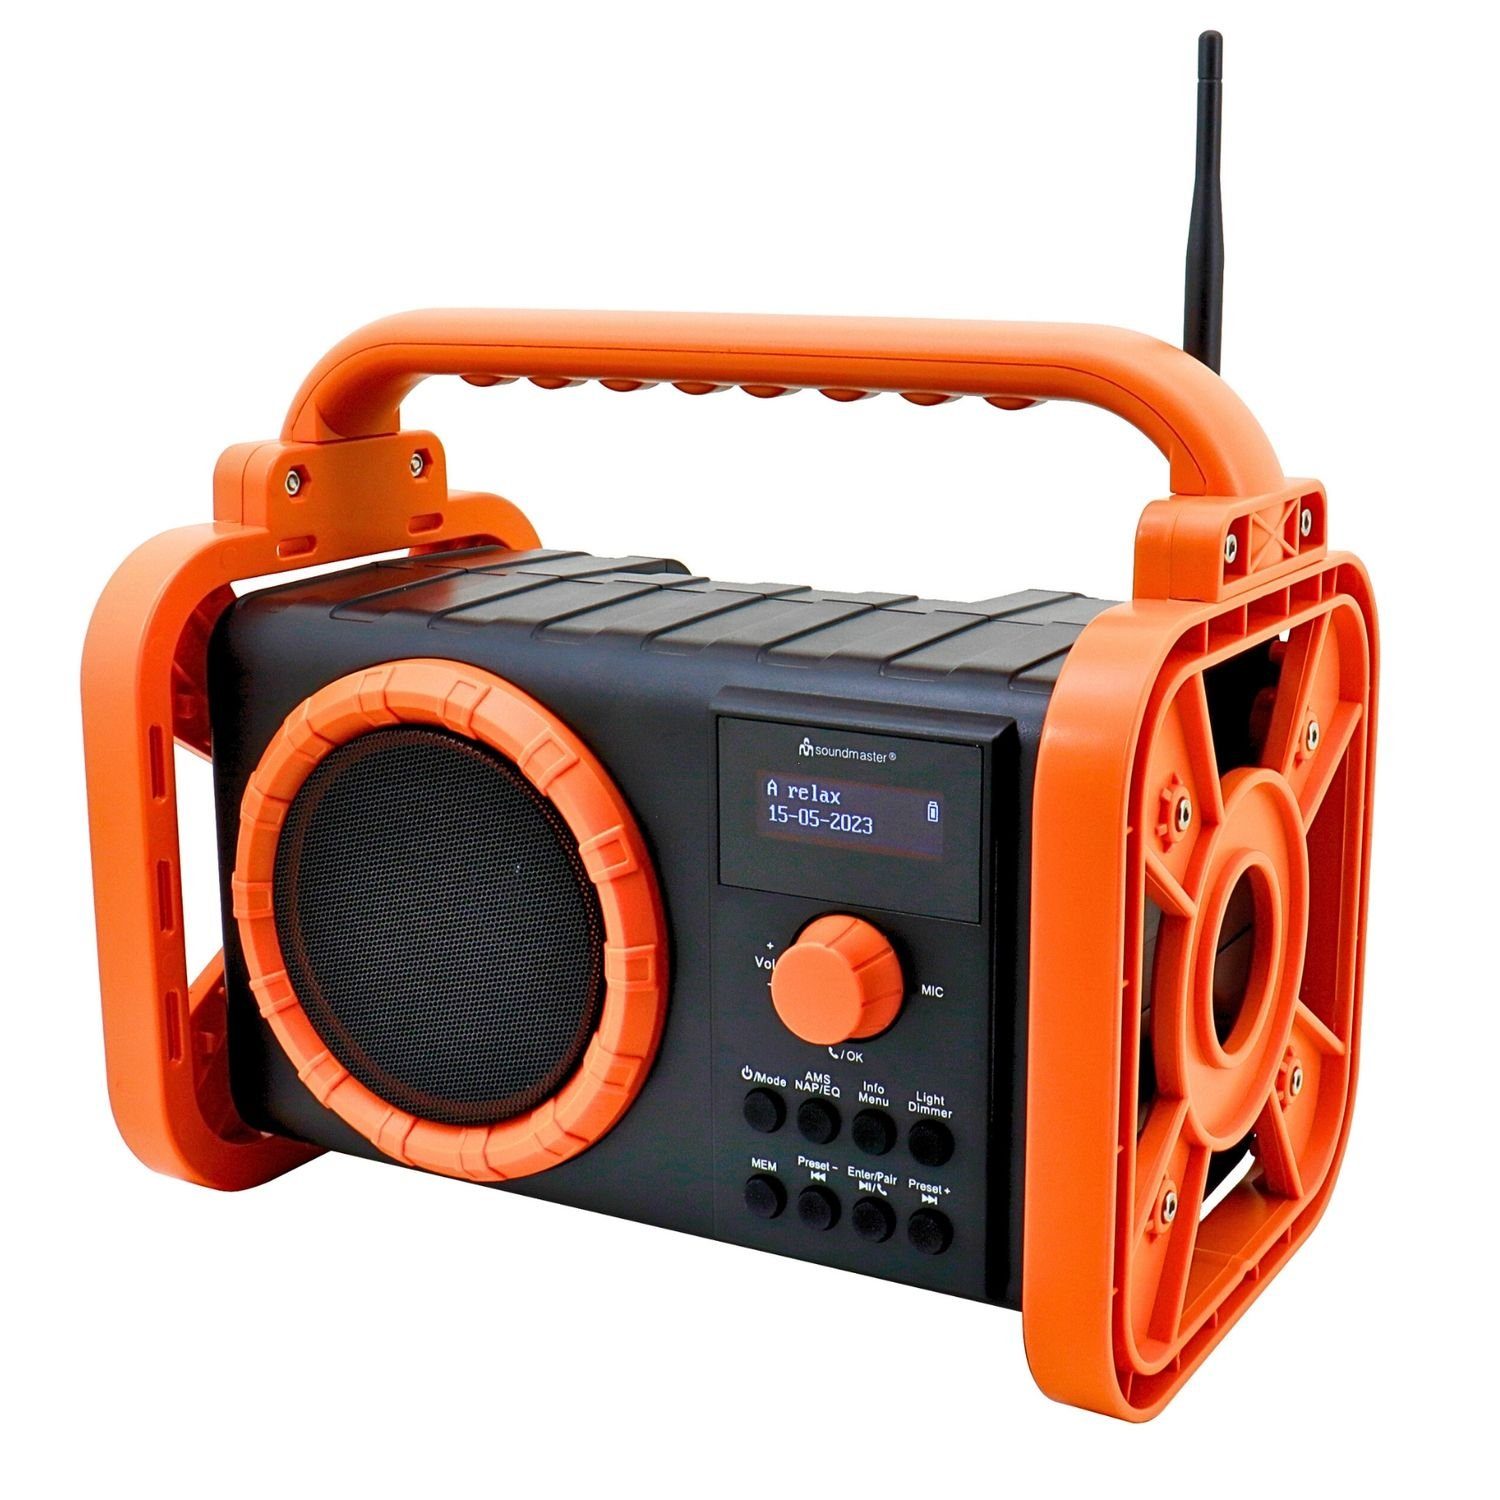 Soundmaster DAB80OR Baustellenradio DAB+ Bluetooth Akku IP44  spritzwassergeschützt Digitalradio (DAB) (DAB+, MW, PLL-UKW, FM, AM)